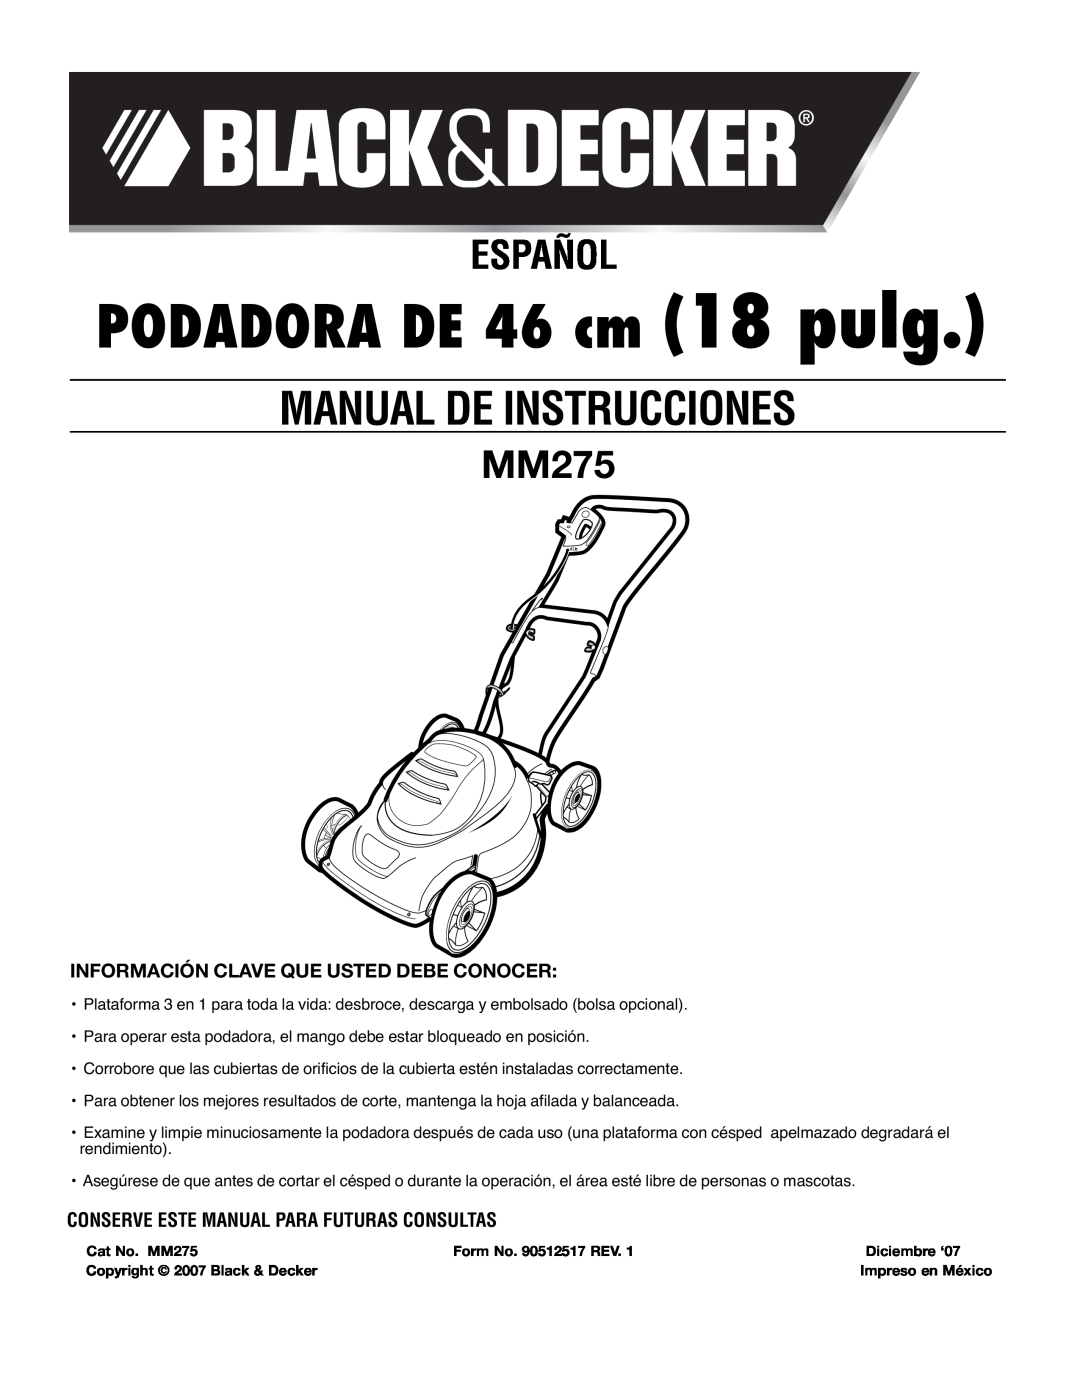 Black & Decker mm275 PODADORA DE 46 cm 18 pulg, Español, Información Clave Que Usted Debe Conocer, Manual De Instrucciones 